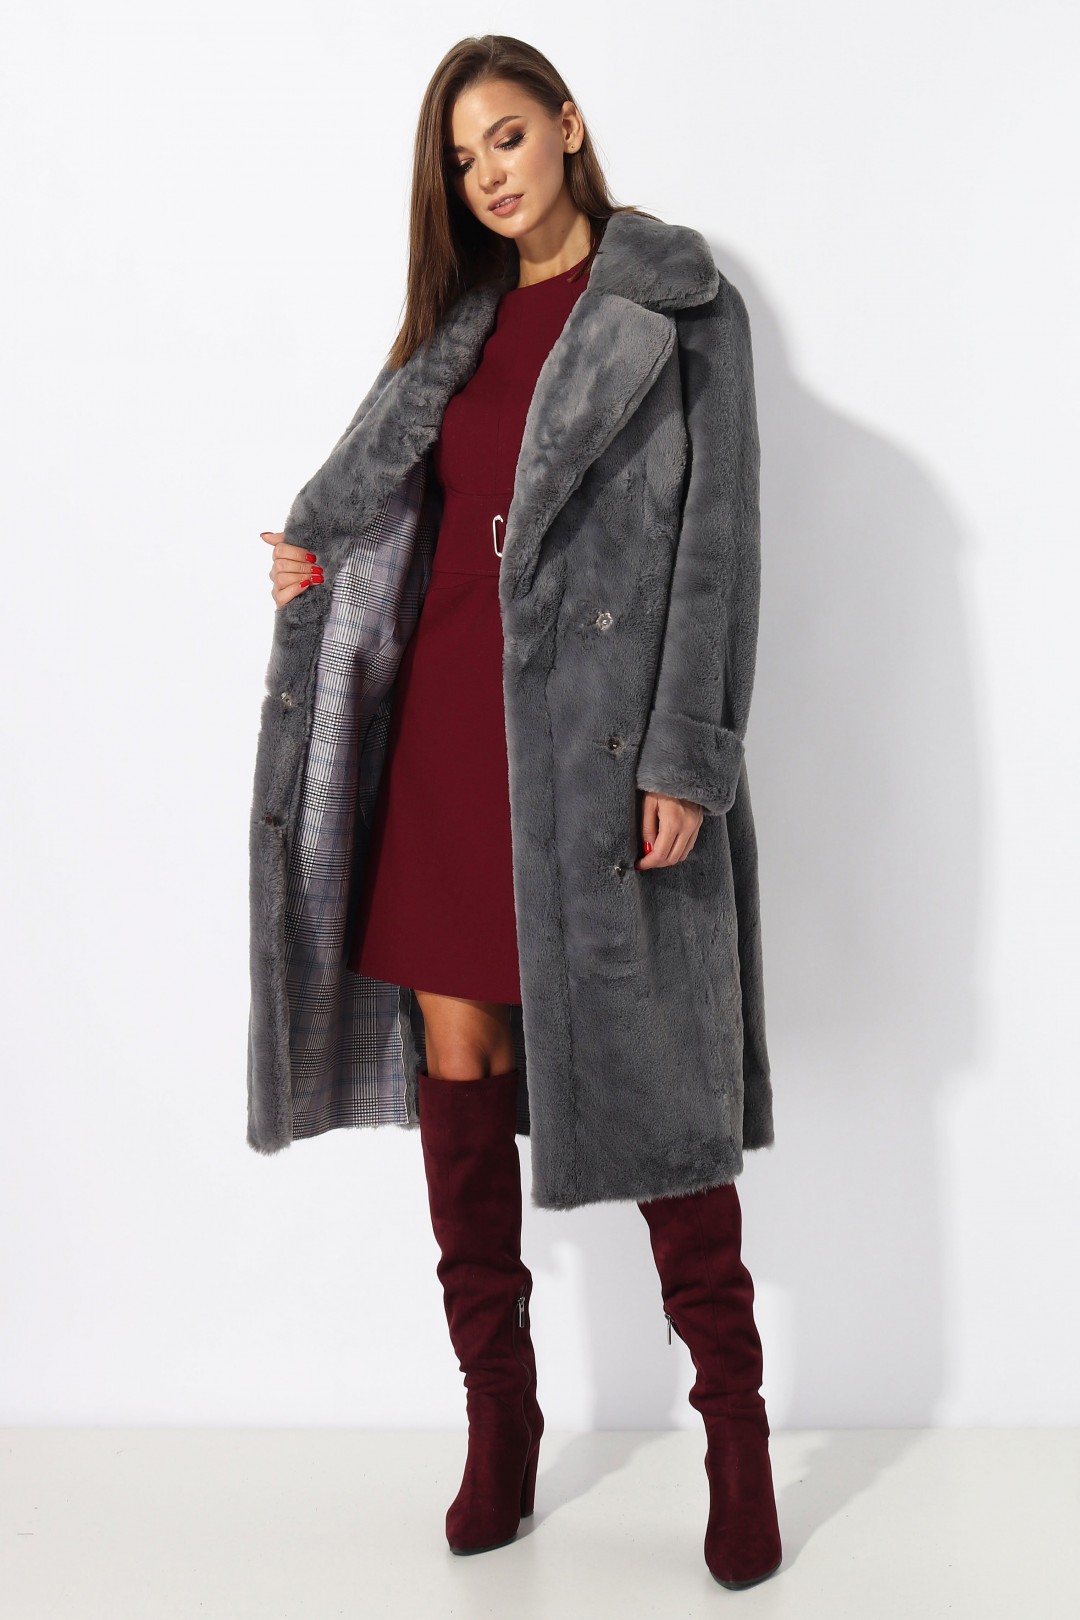   Пальто МиА-Мода 1194 серый